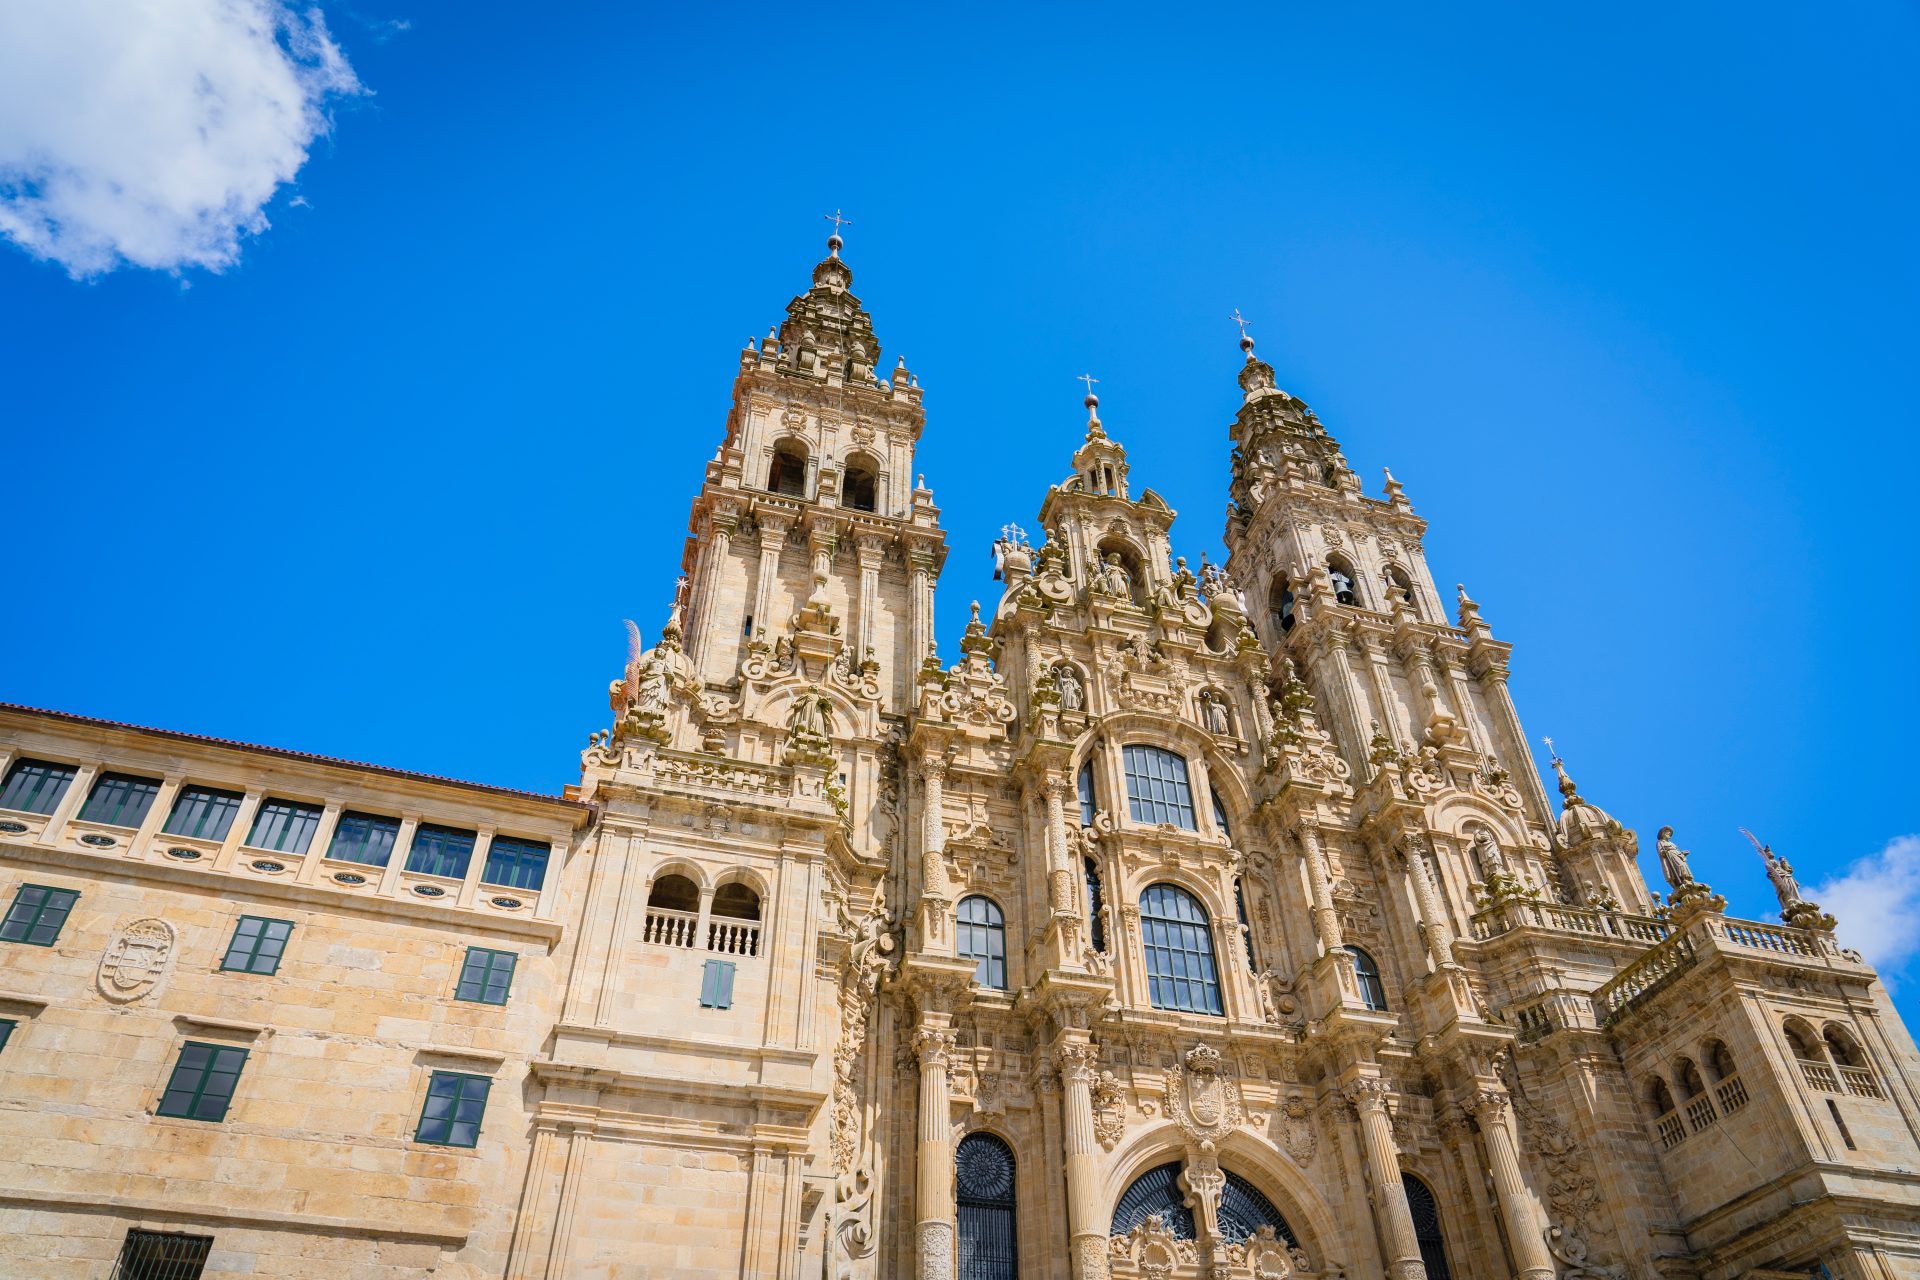 Santiago de Compostela cathedral under a blue sky, Praza do Obradoiro, Spain